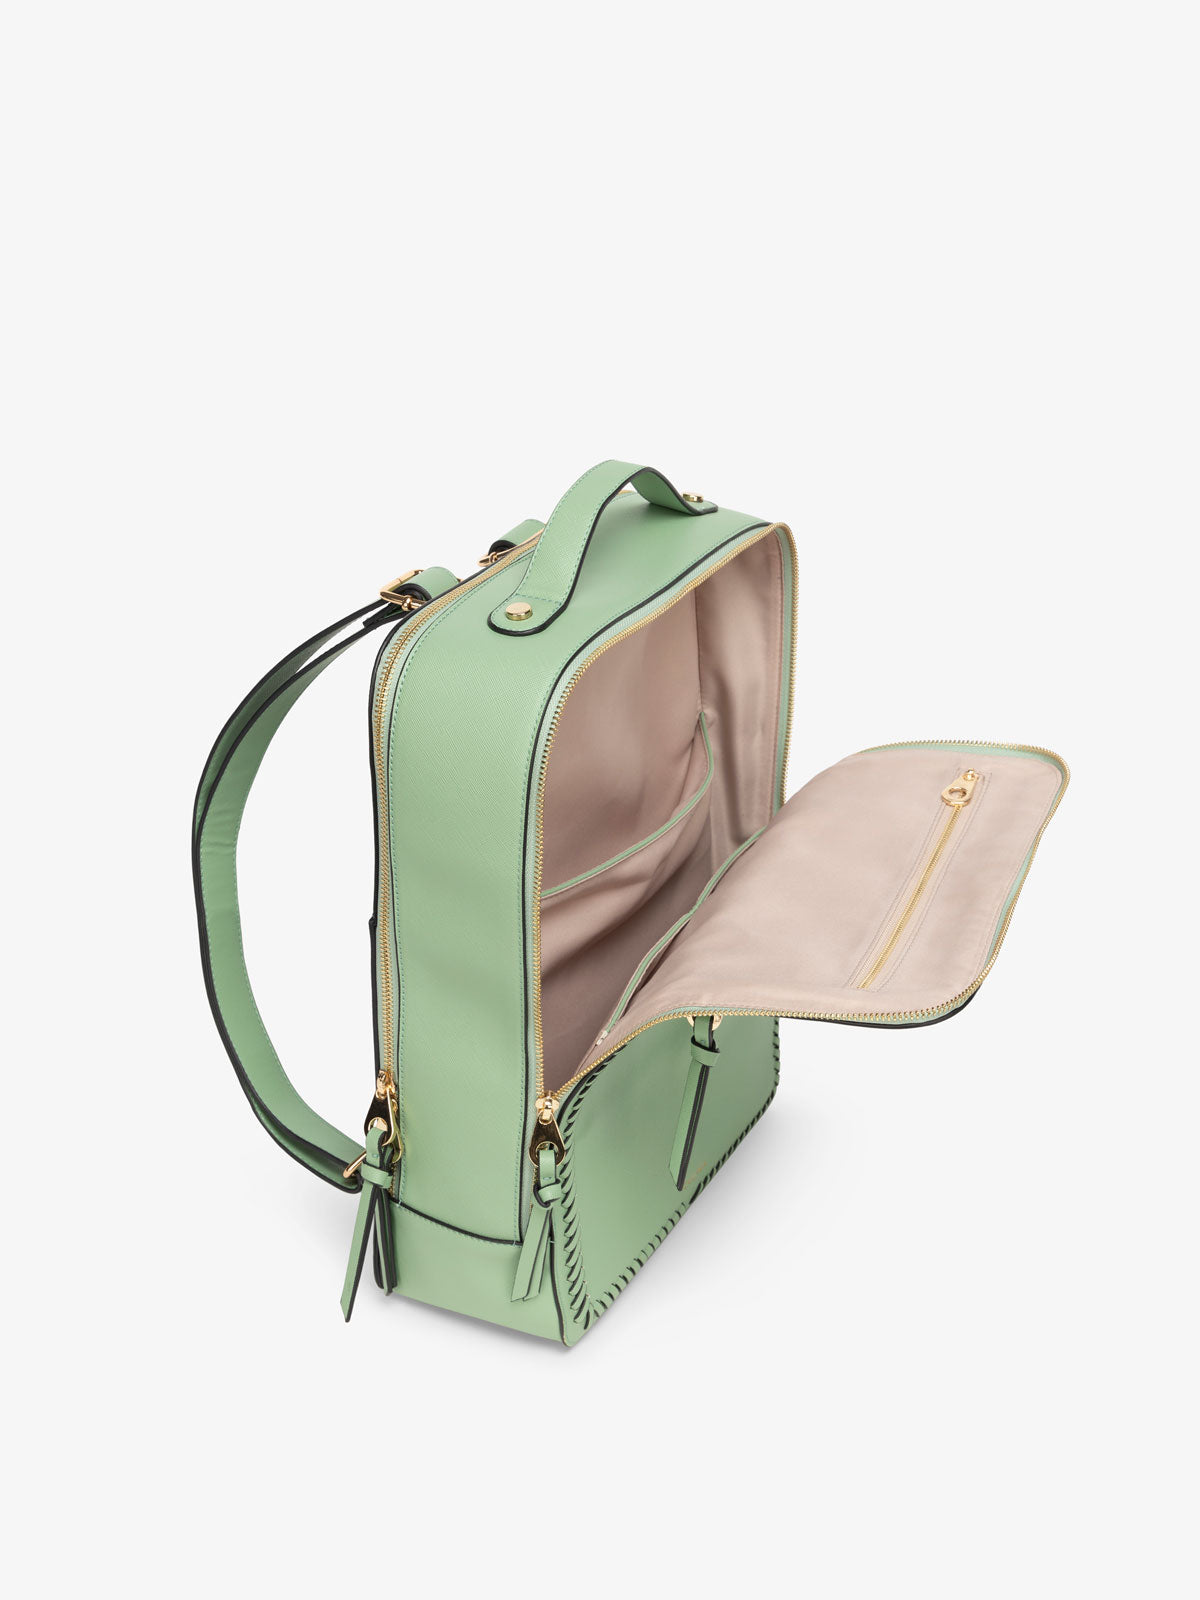 Kaya laptop backpack top view in green honeydew